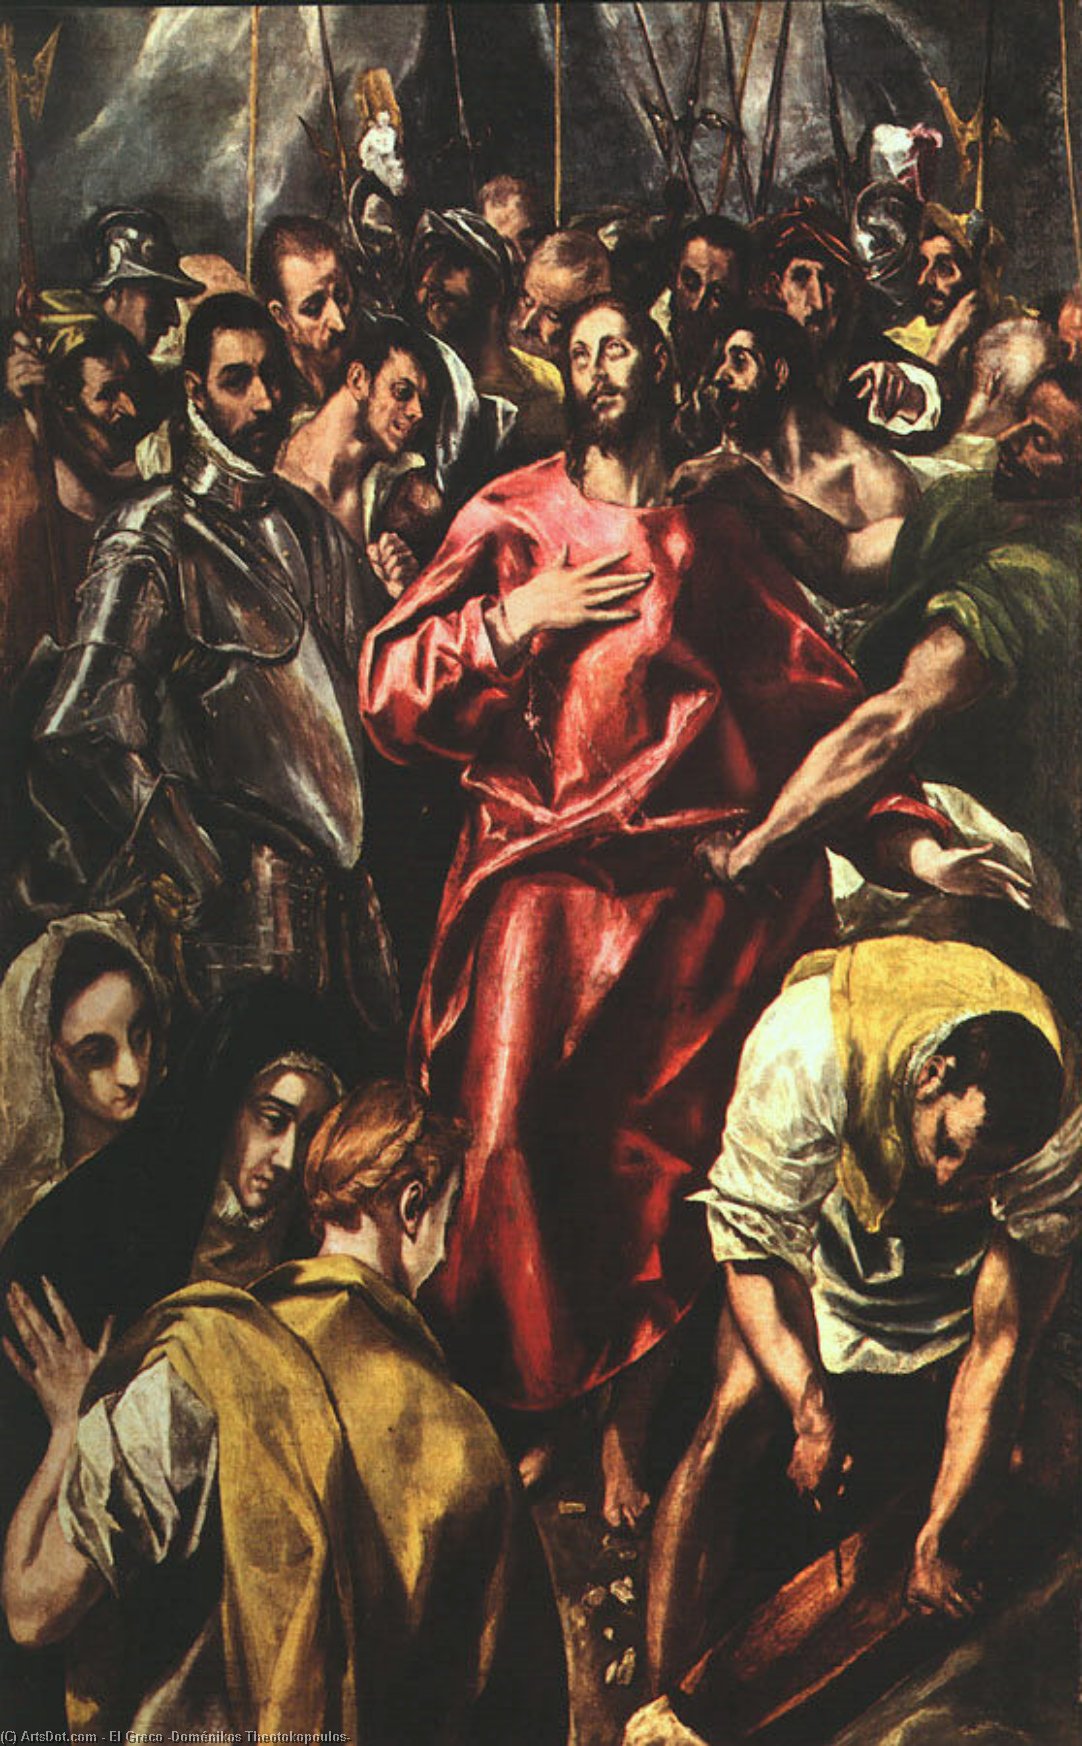 WikiOO.org - Encyclopedia of Fine Arts - Malba, Artwork El Greco (Doménikos Theotokopoulos) - The Disrobing of Christ